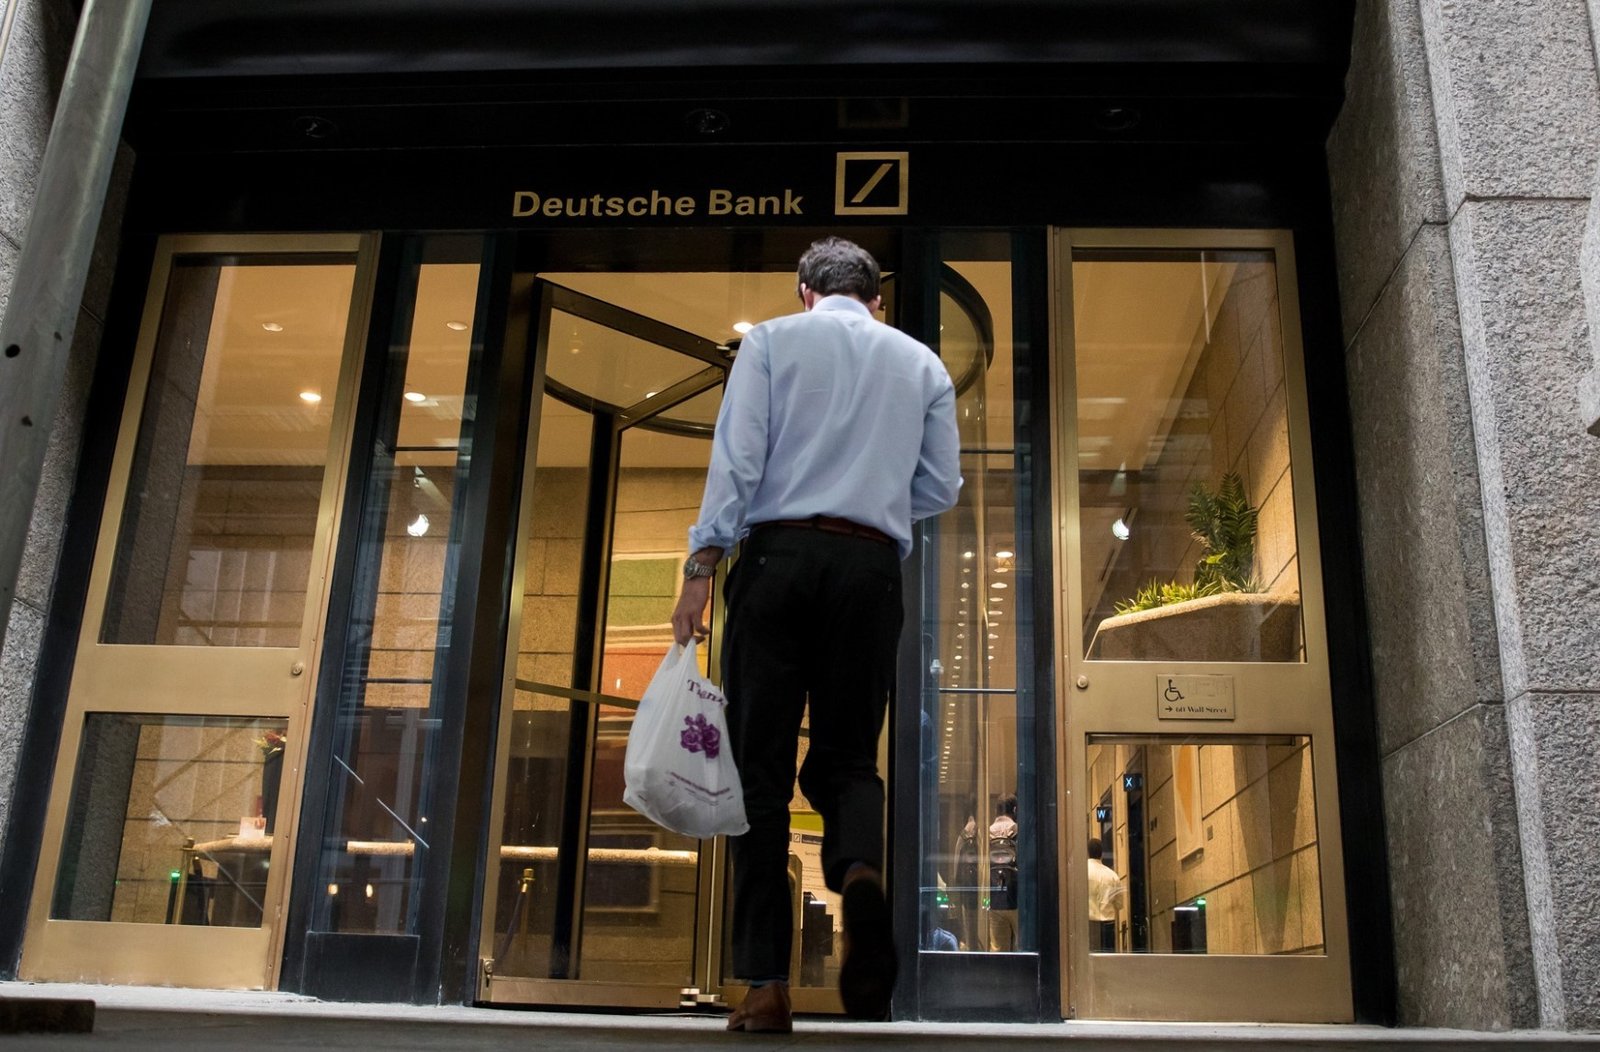 Deutsche Bank Marketing Mix